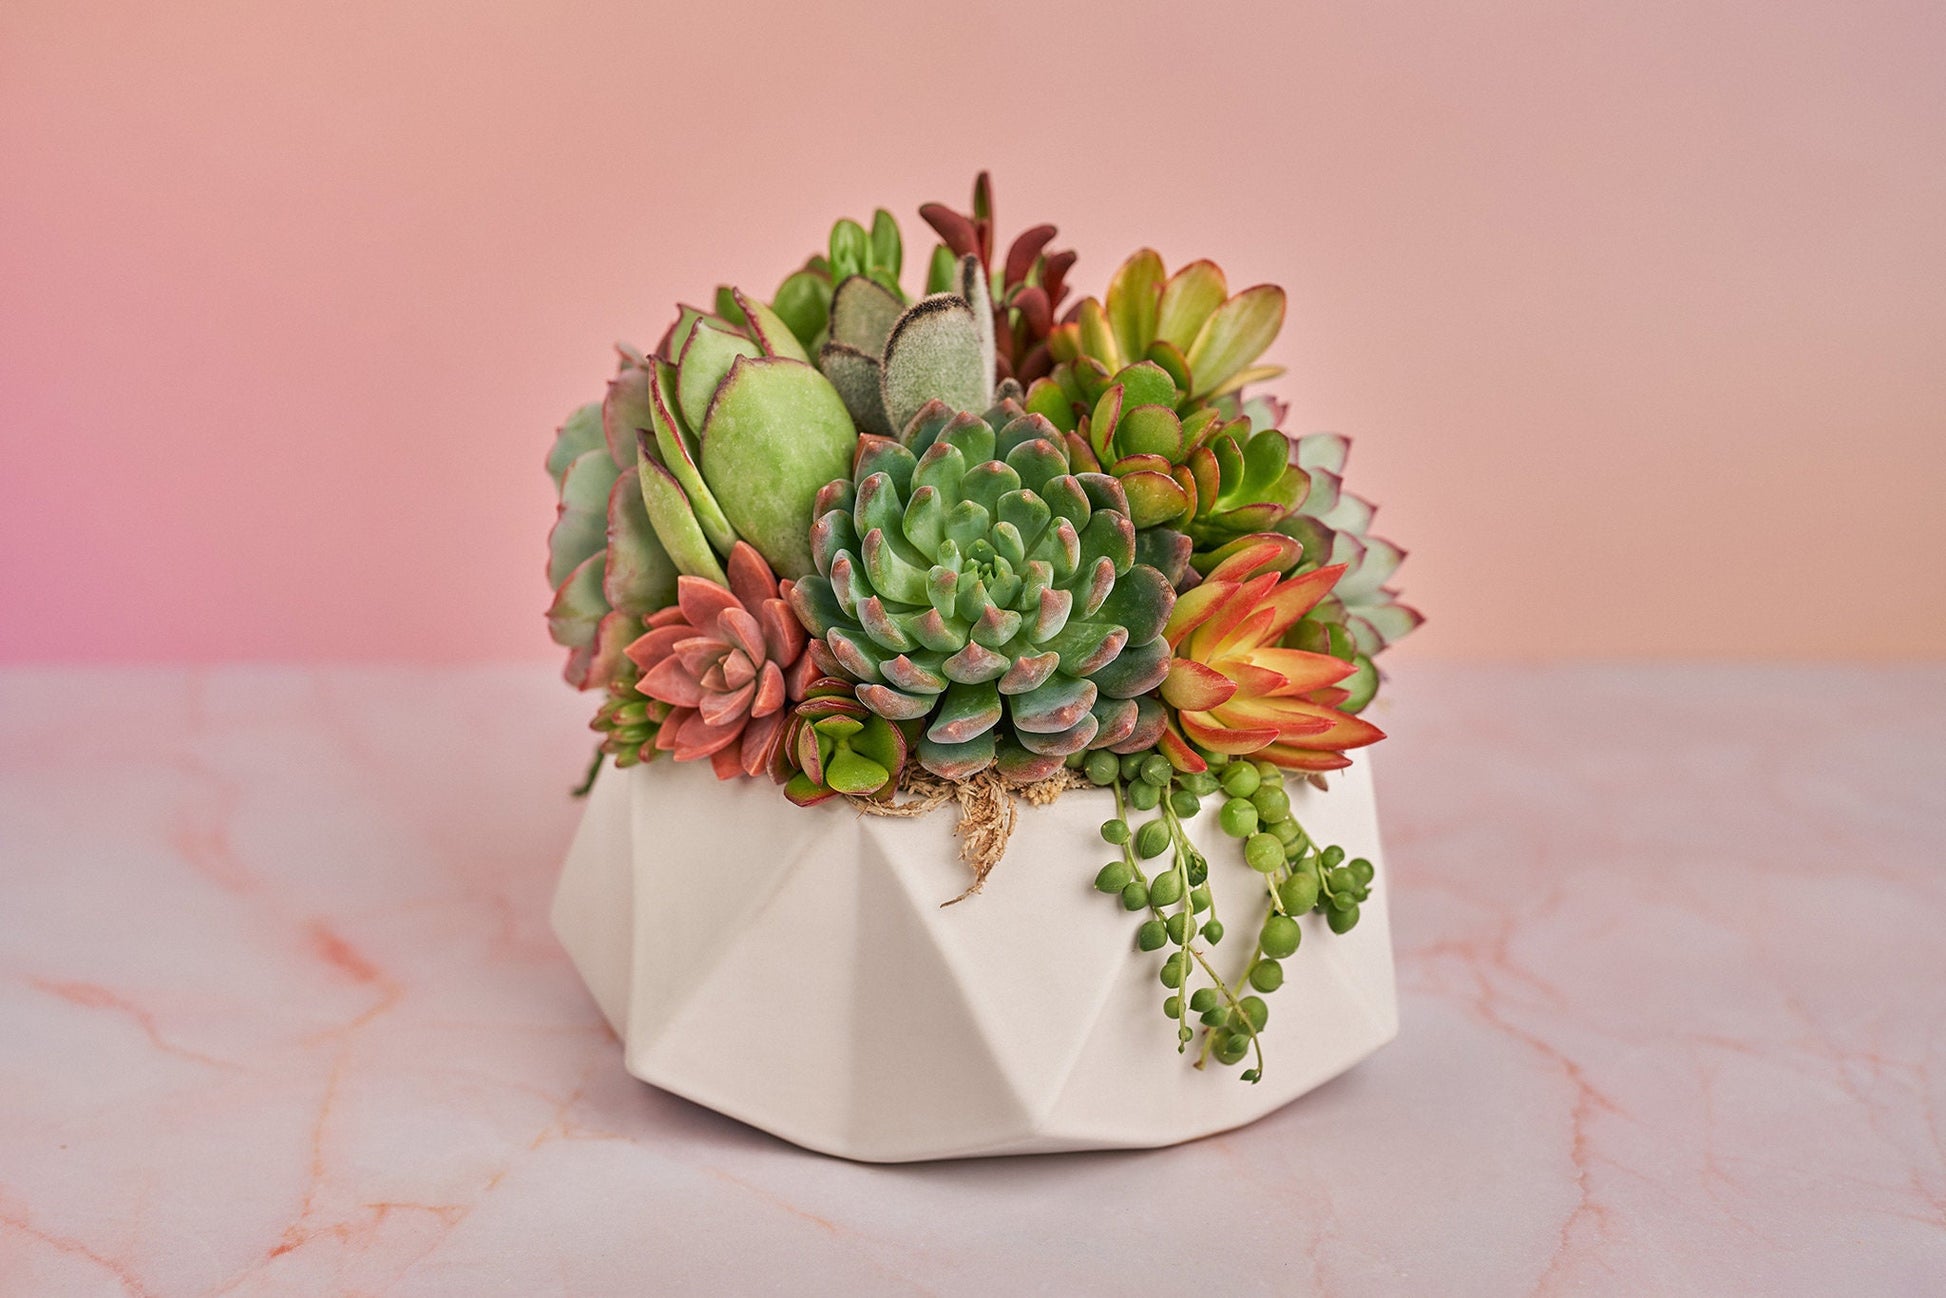 Geometric White Bowl Living Succulent Arrangement Gift | Alt Floral Wedding Event Centerpiece